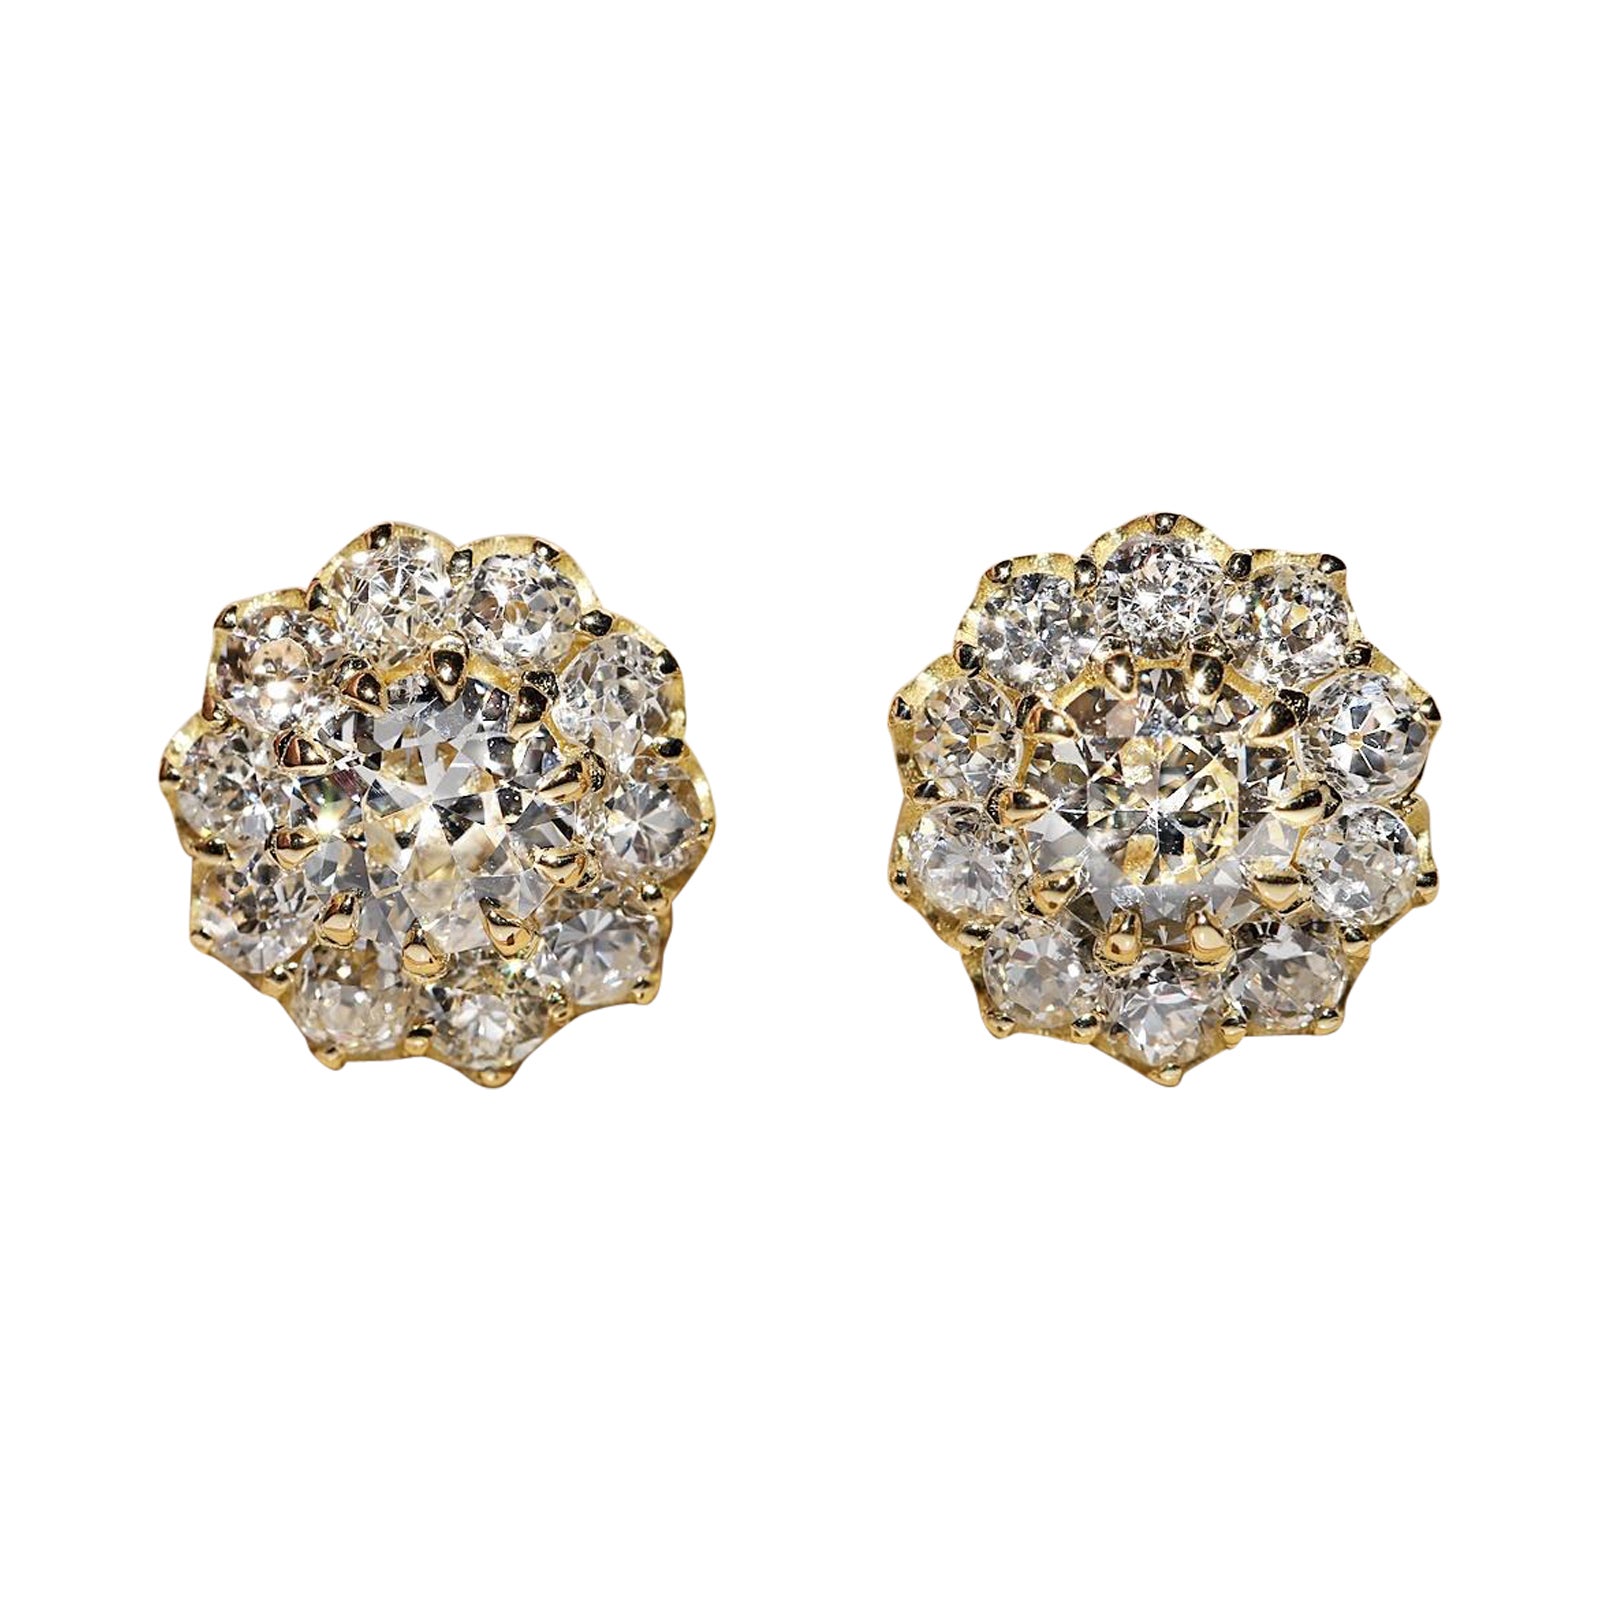 New Made 18k Gold natürlichen Diamanten dekoriert hübschen Ohrring 